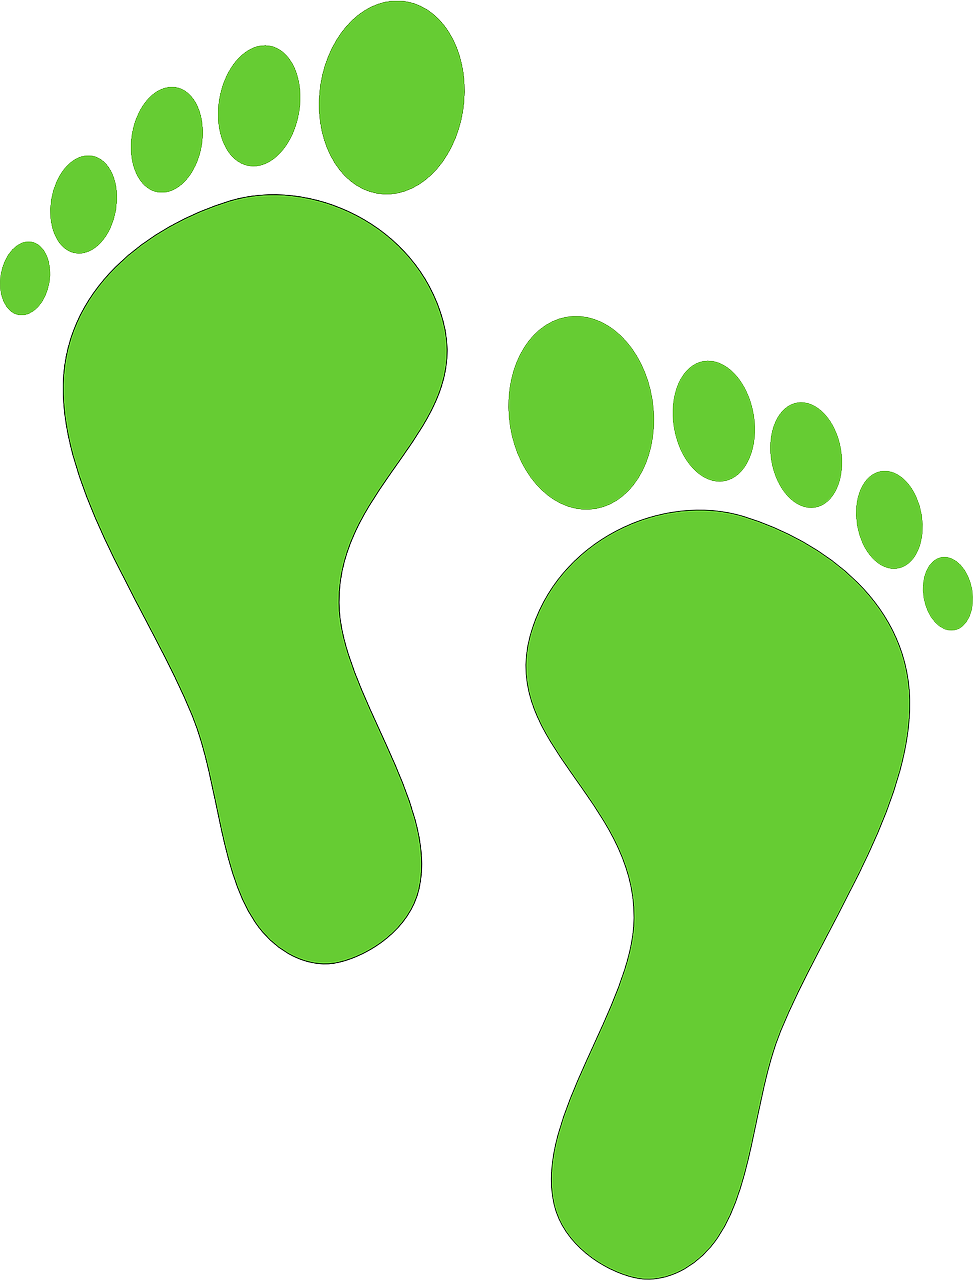 footprints-156111_1280.png